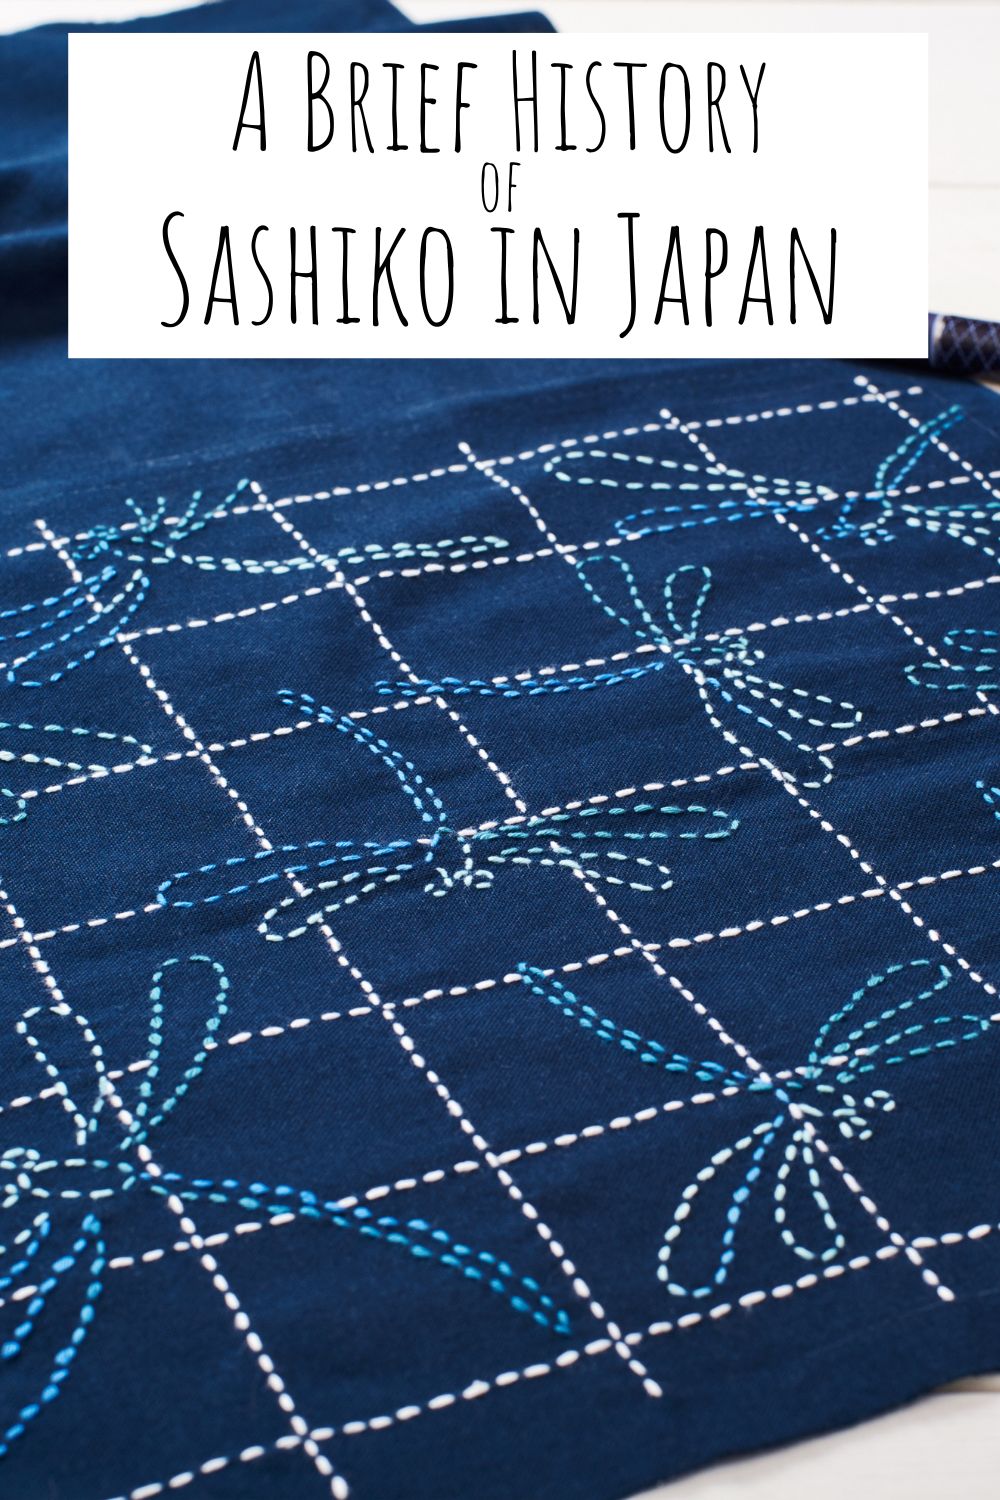 A Brief History of Sashiko in Japan